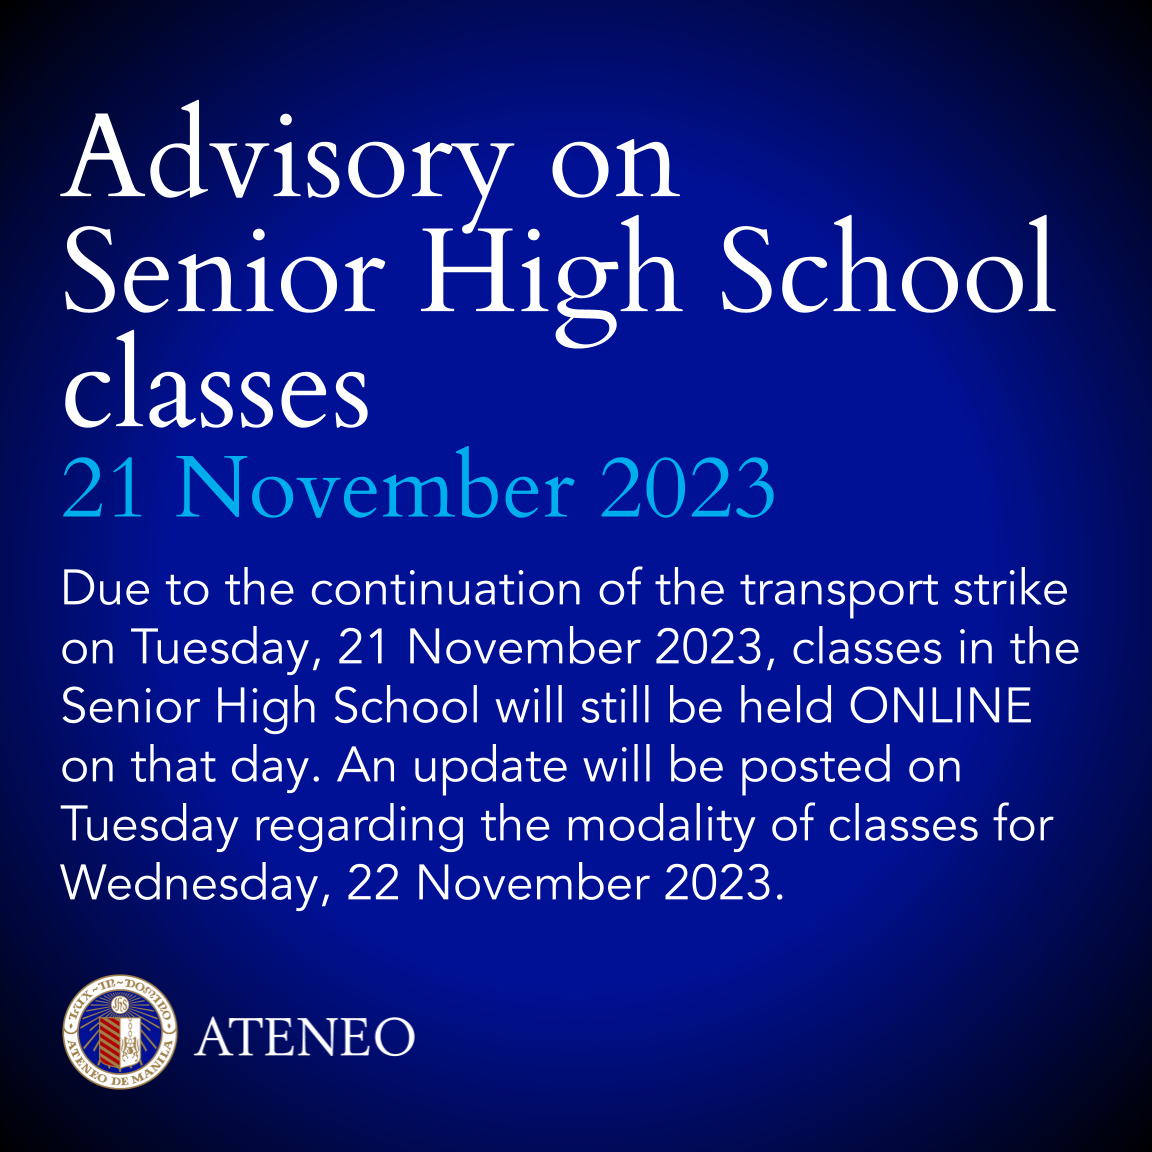 Online classes on 21 November 2023 